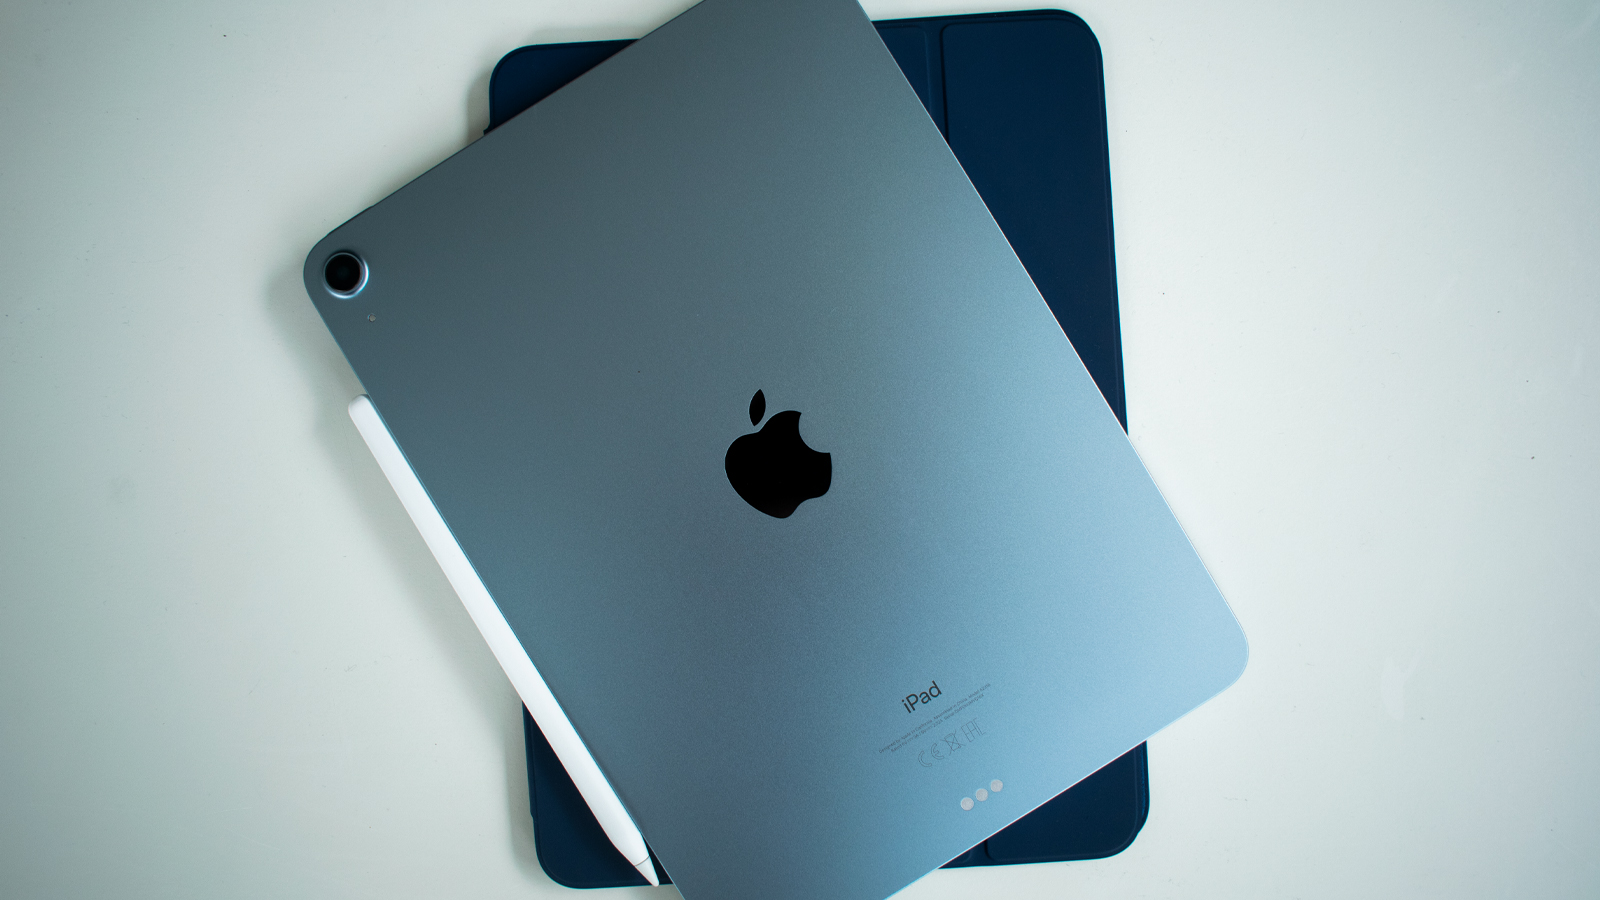 iPad Air 4 kopen Apple geeft E100 korting op refurbished